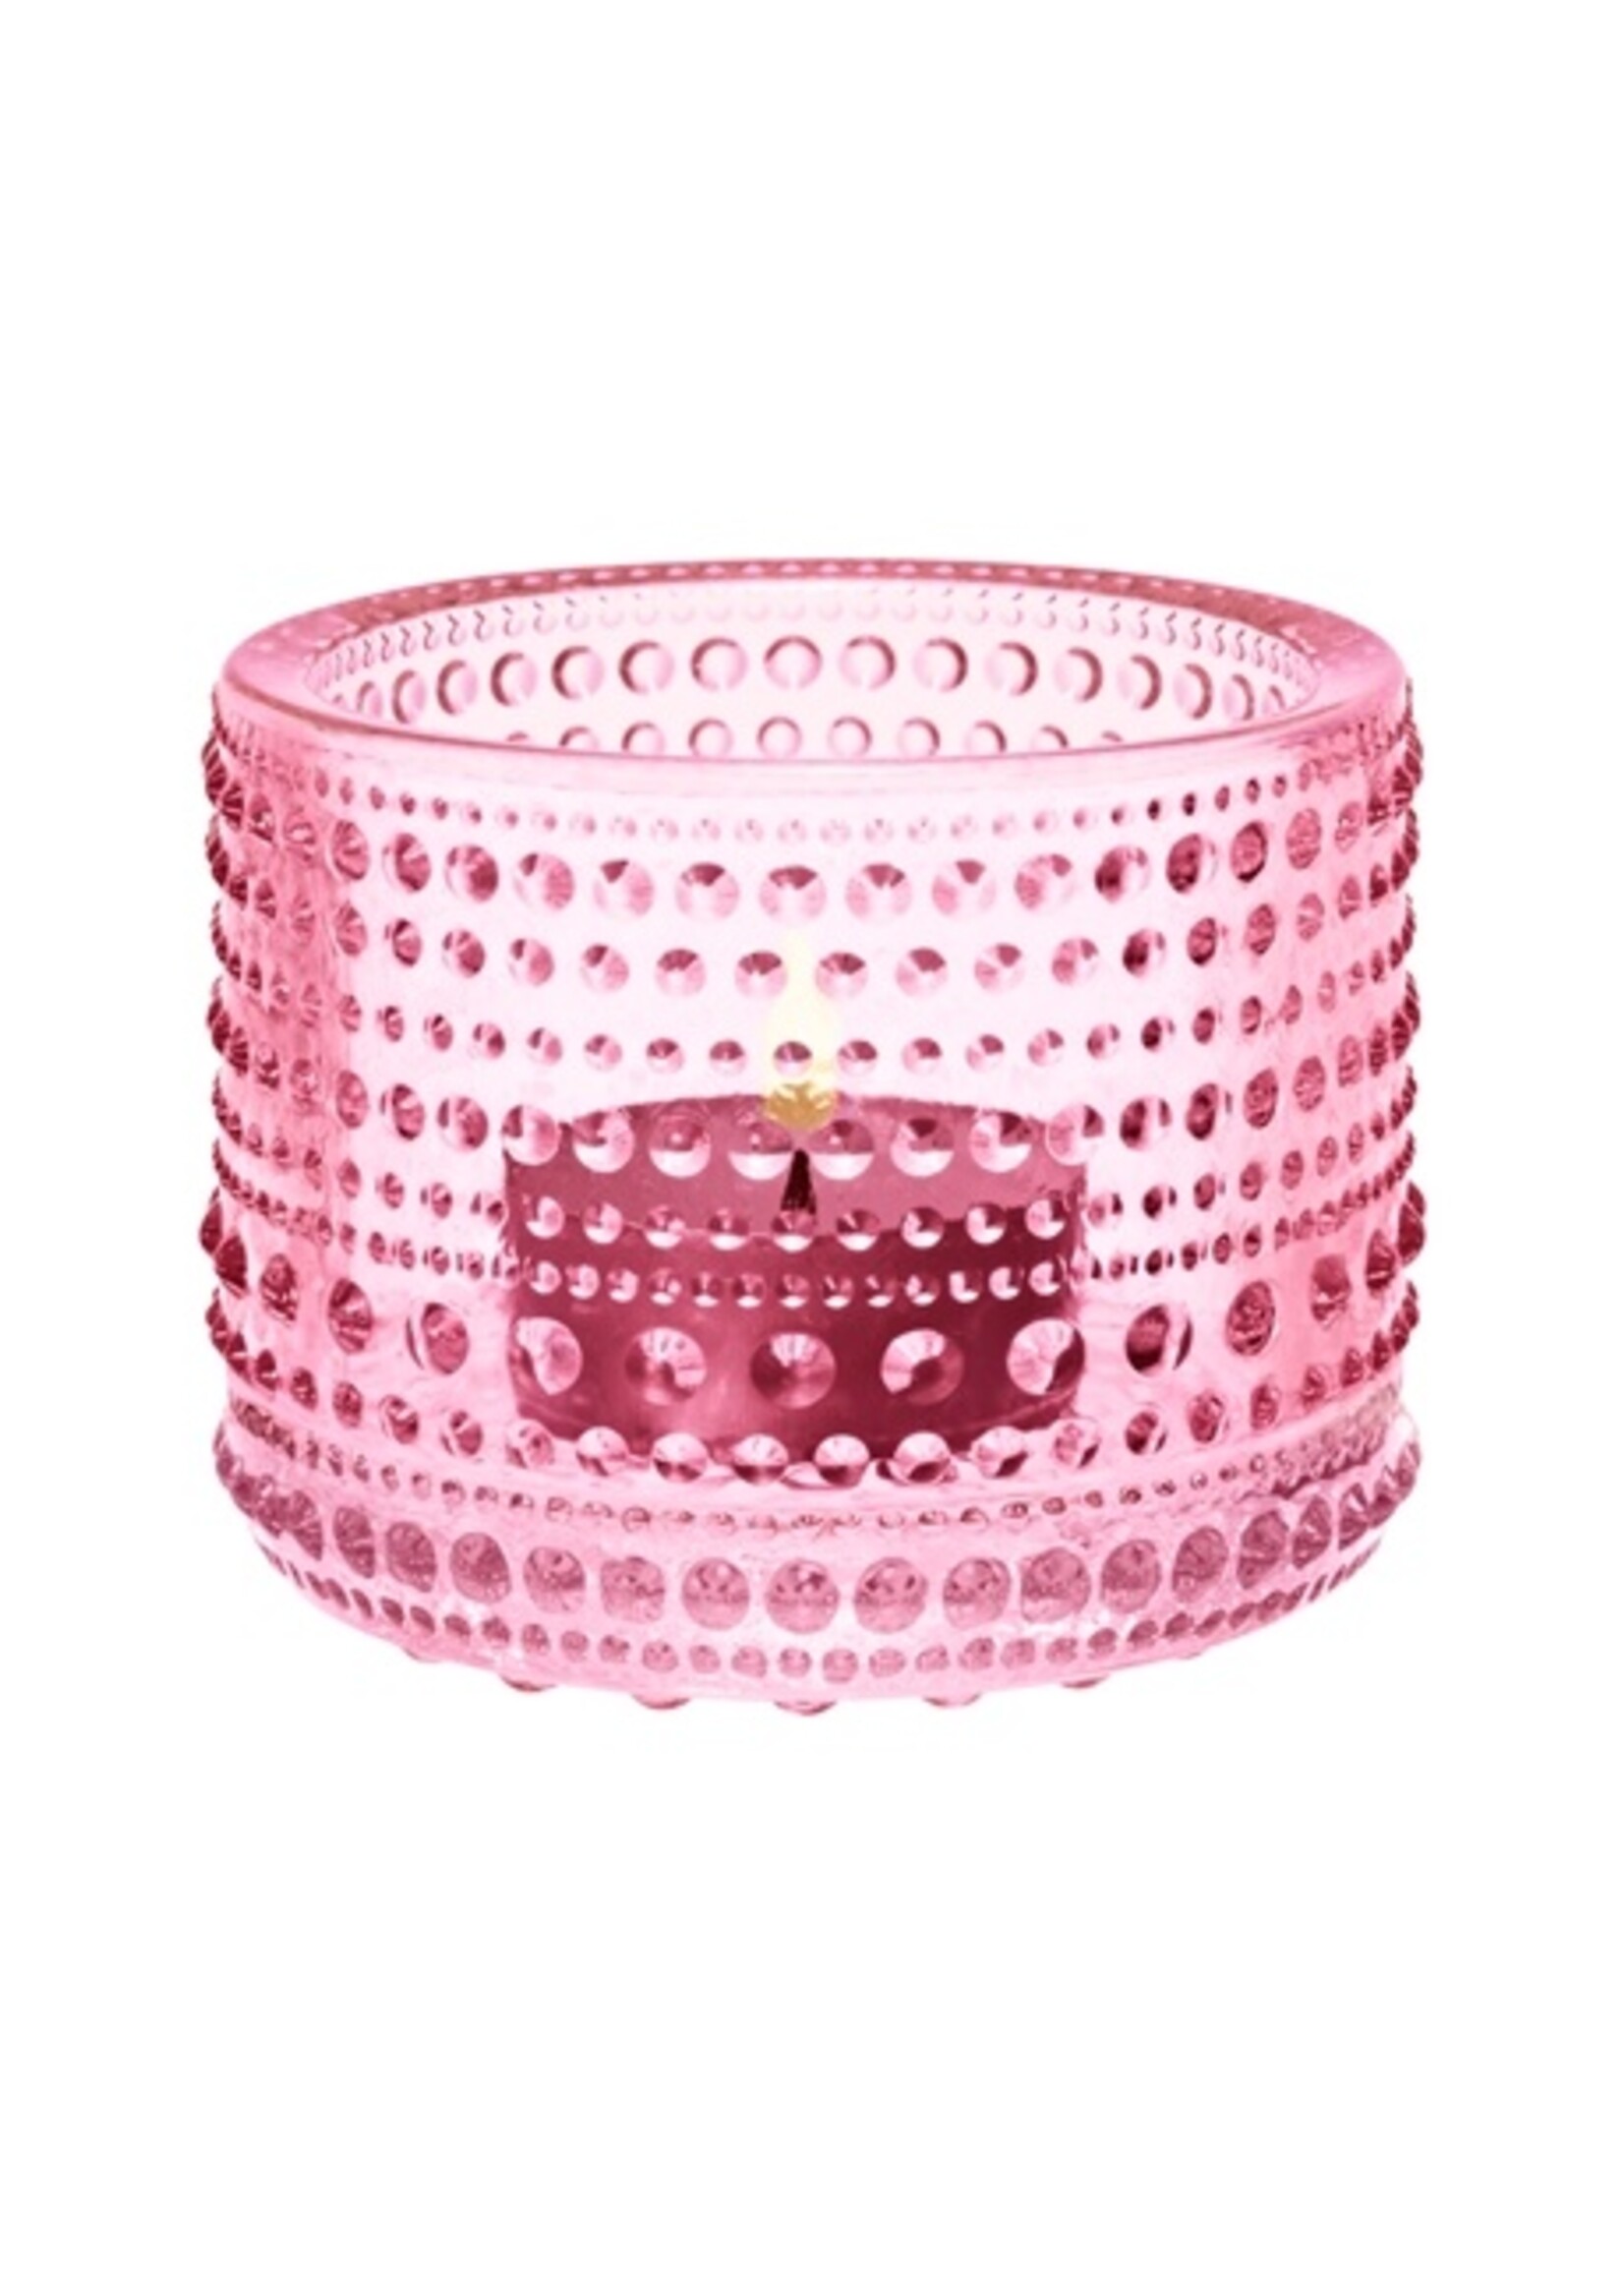 Iittala Iittala Kastehelmi Porte-lampe à cire/Lampe-sphère 64 mm rose